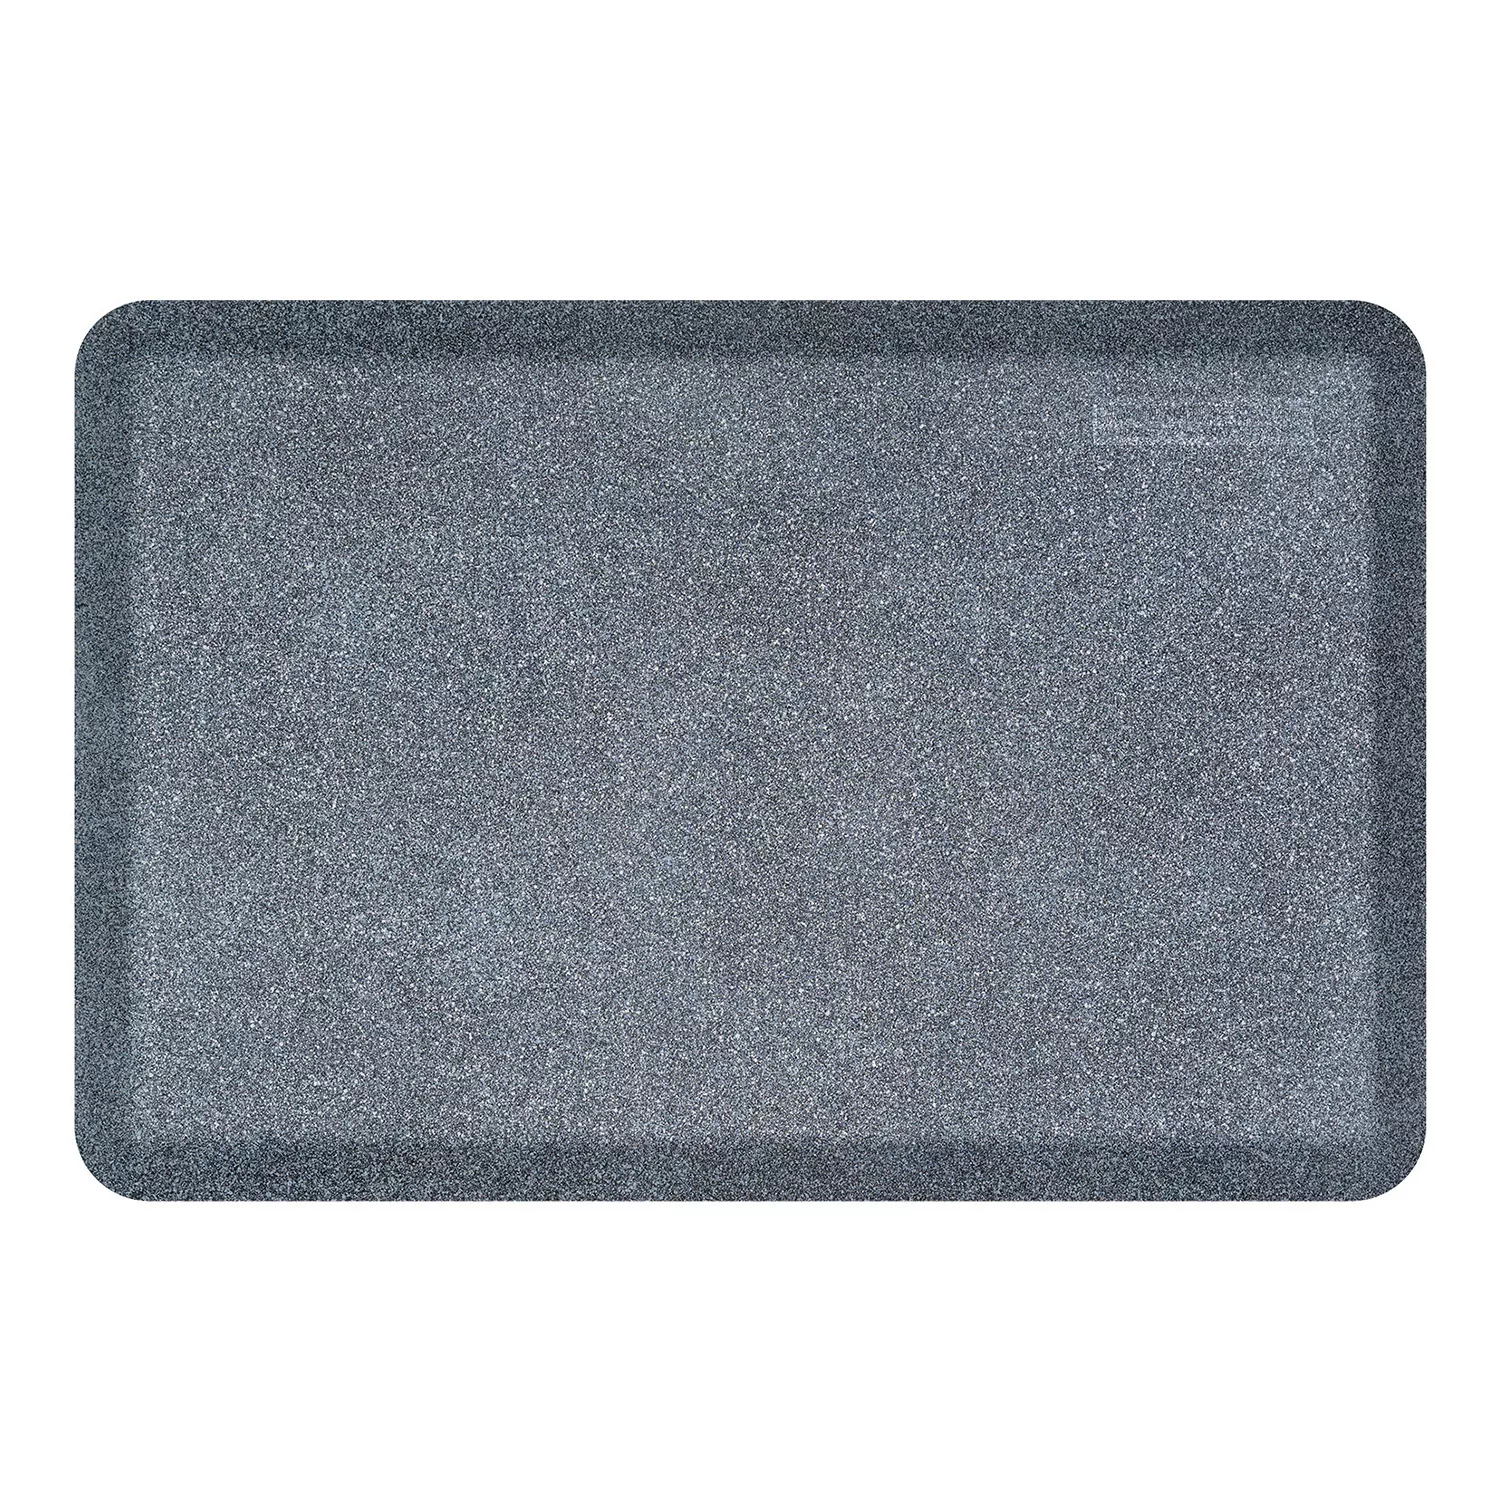 Orvis Super-Absorbent Doormat | Tan | Size 36